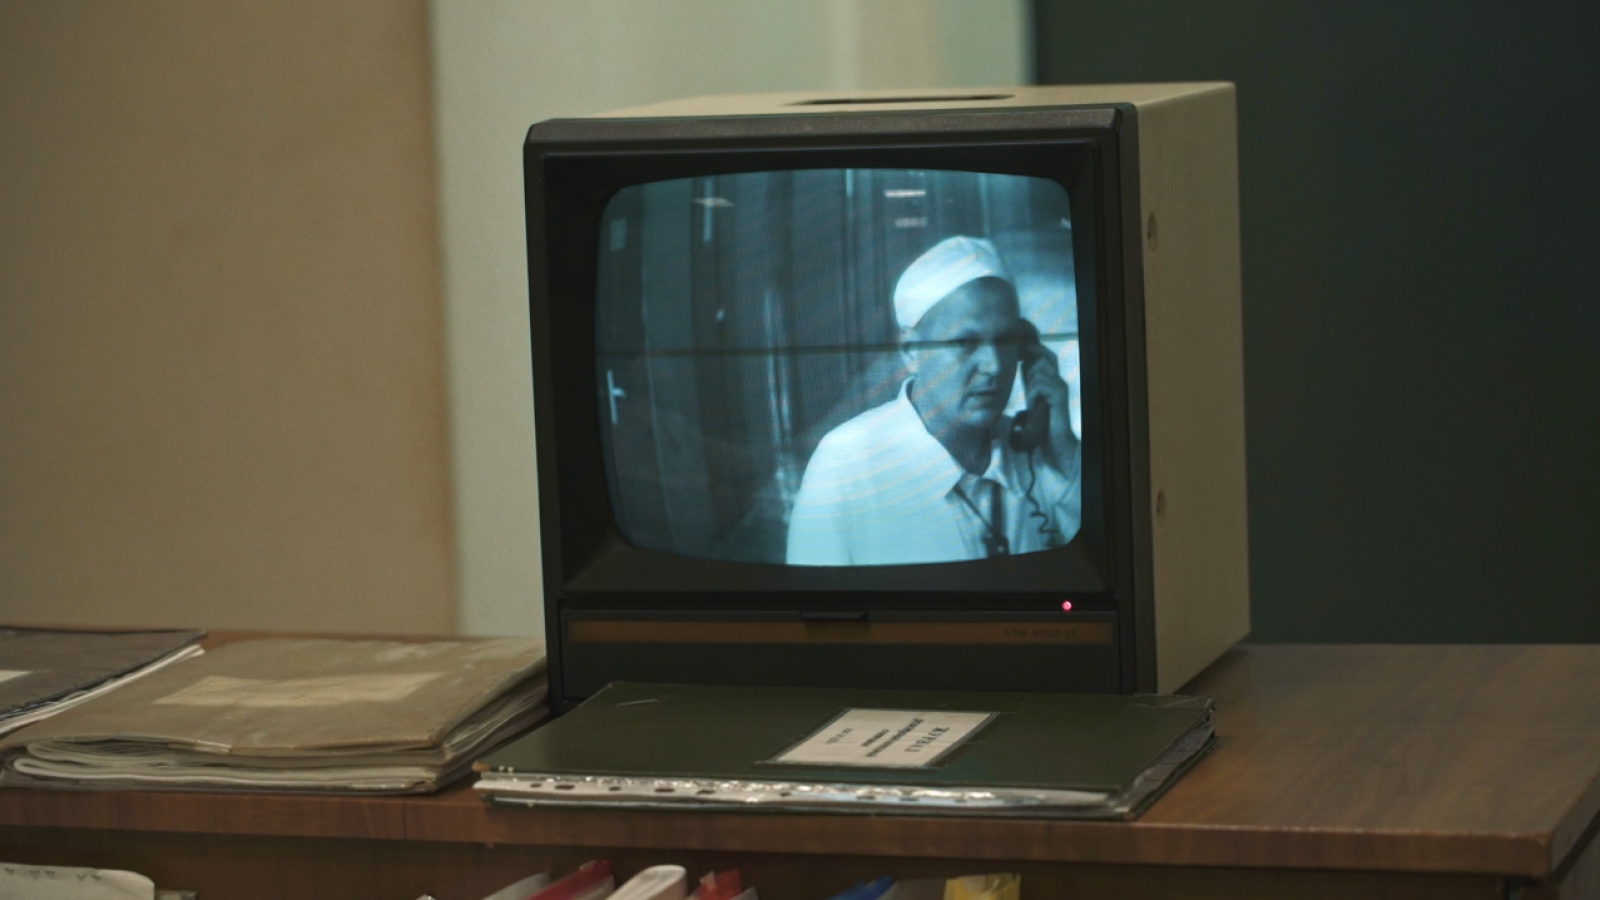 rus: На письмовому столі два зошити і телевізор. У телевізорі зображено, як працівник станції говорить по телефону.